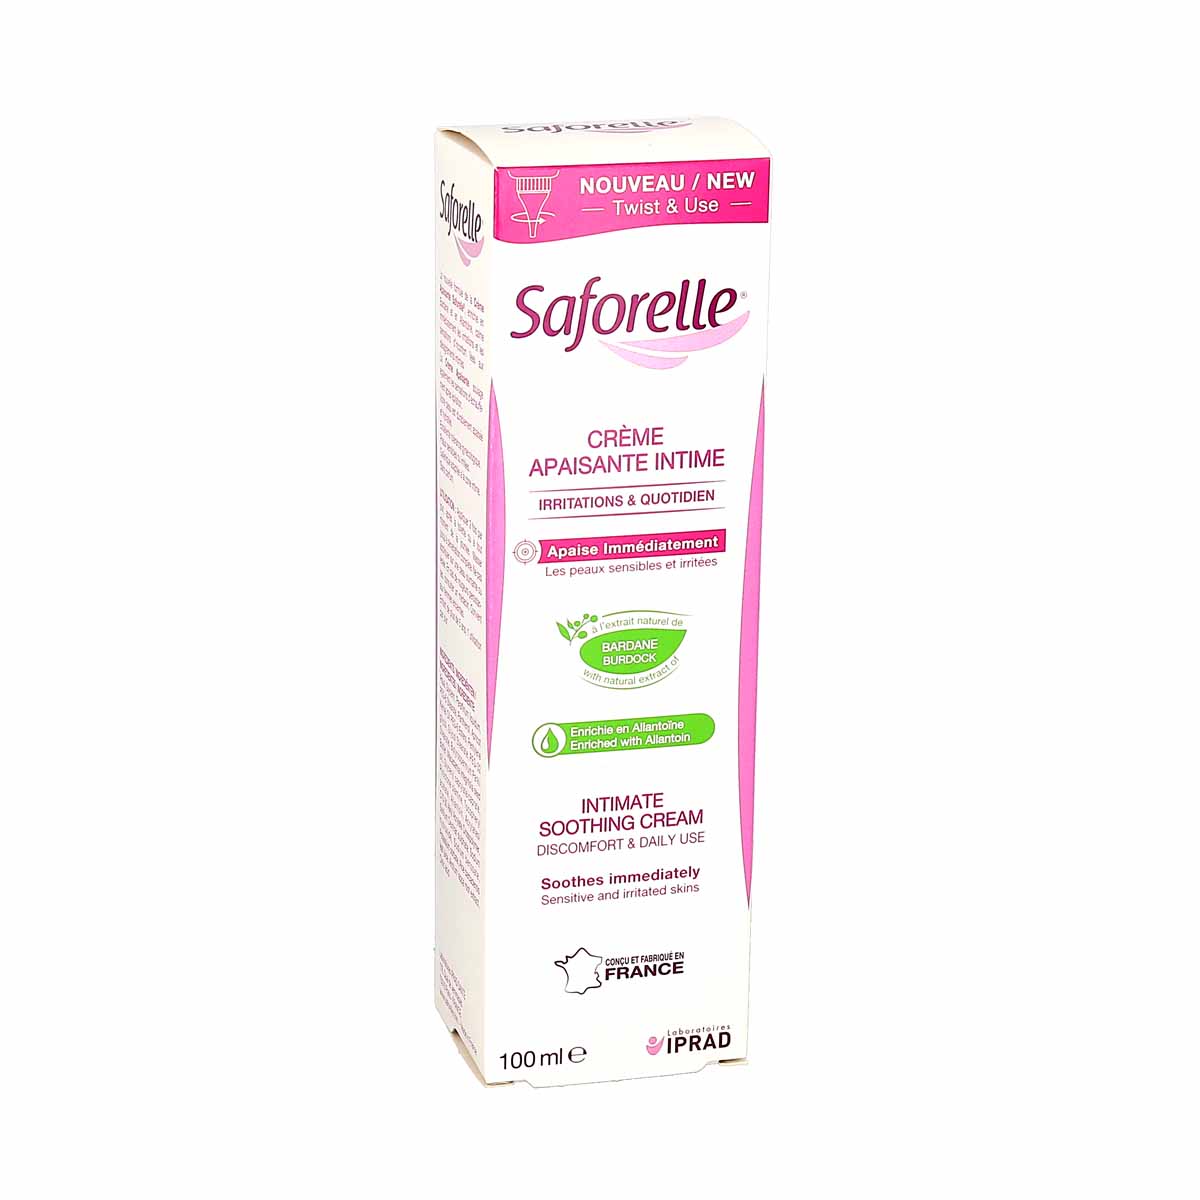 Saforelle Crème Apaisante Intime, tube de 100ml